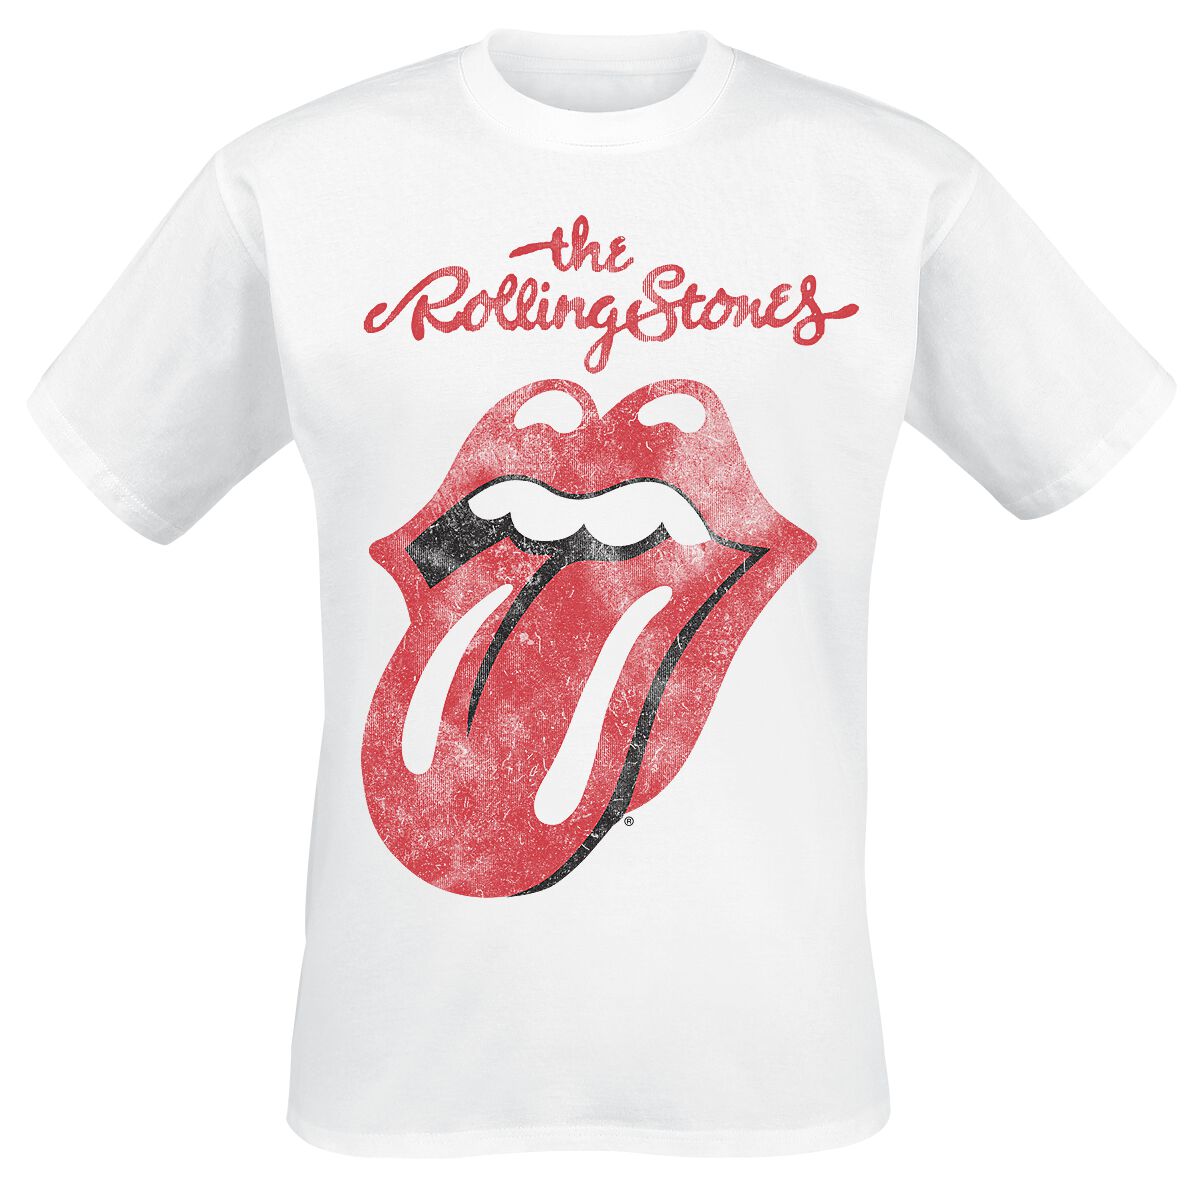 The Rolling Stones T-Shirt - Classic Tongue - S bis XXL - für Männer - Größe M - weiß  - Lizenziertes Merchandise!